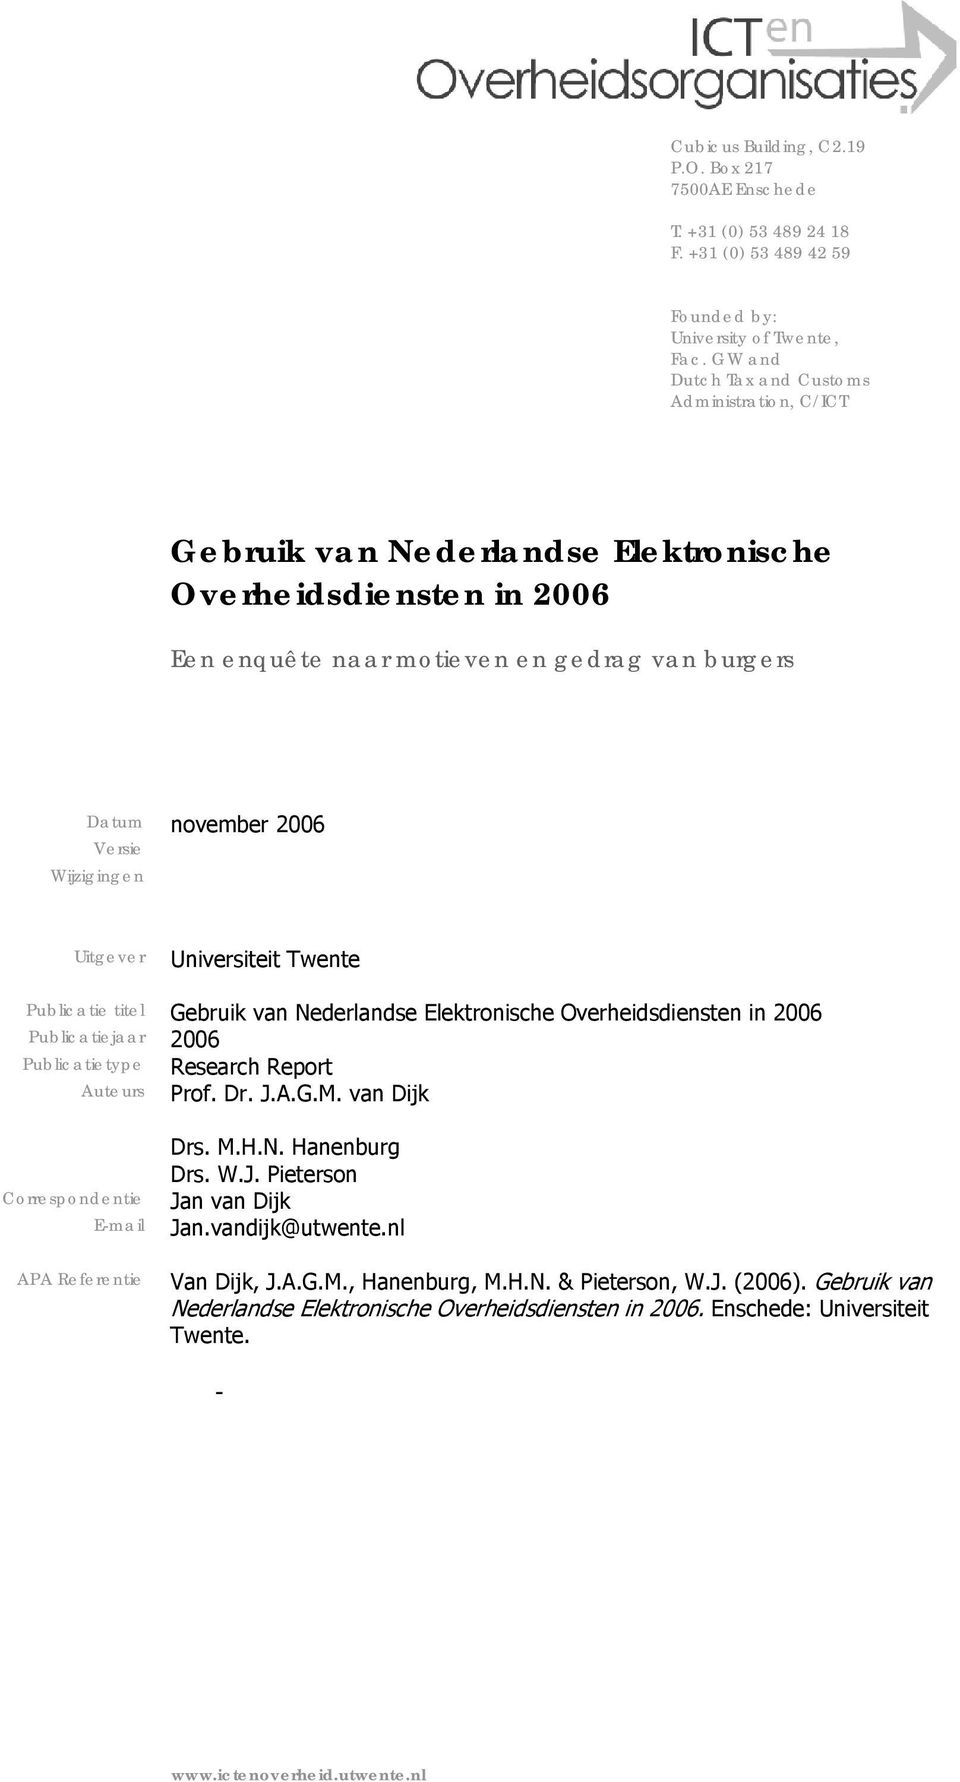 Wijzigingen Uitgever Universiteit Twente Publicatie titel Gebruik van Nederlandse Elektronische Overheidsdiensten in 2006 Publicatiejaar 2006 Publicatietype Research Report Auteurs Prof. Dr. J.A.G.M.